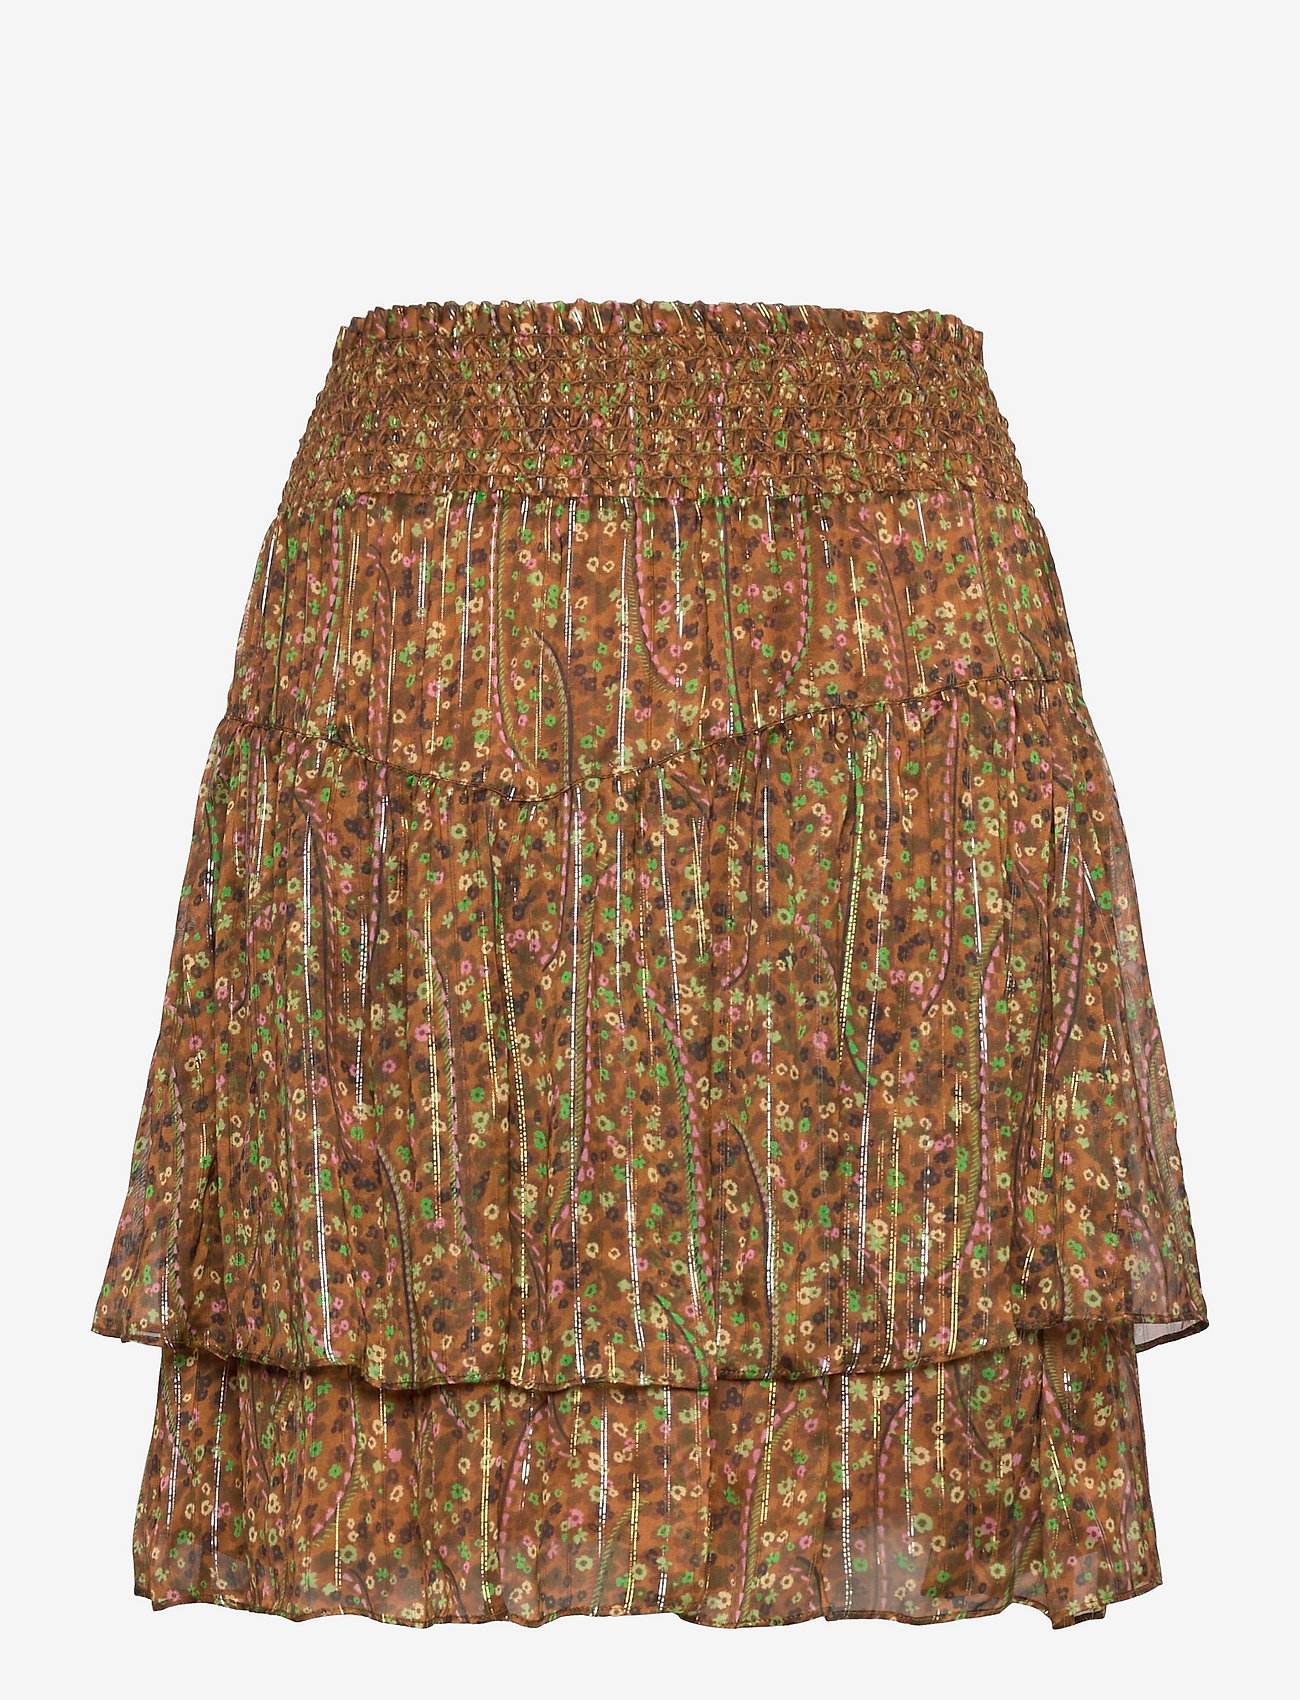 Dante6 - Wonderous floral print skirt - kurze röcke - multicolour - 1